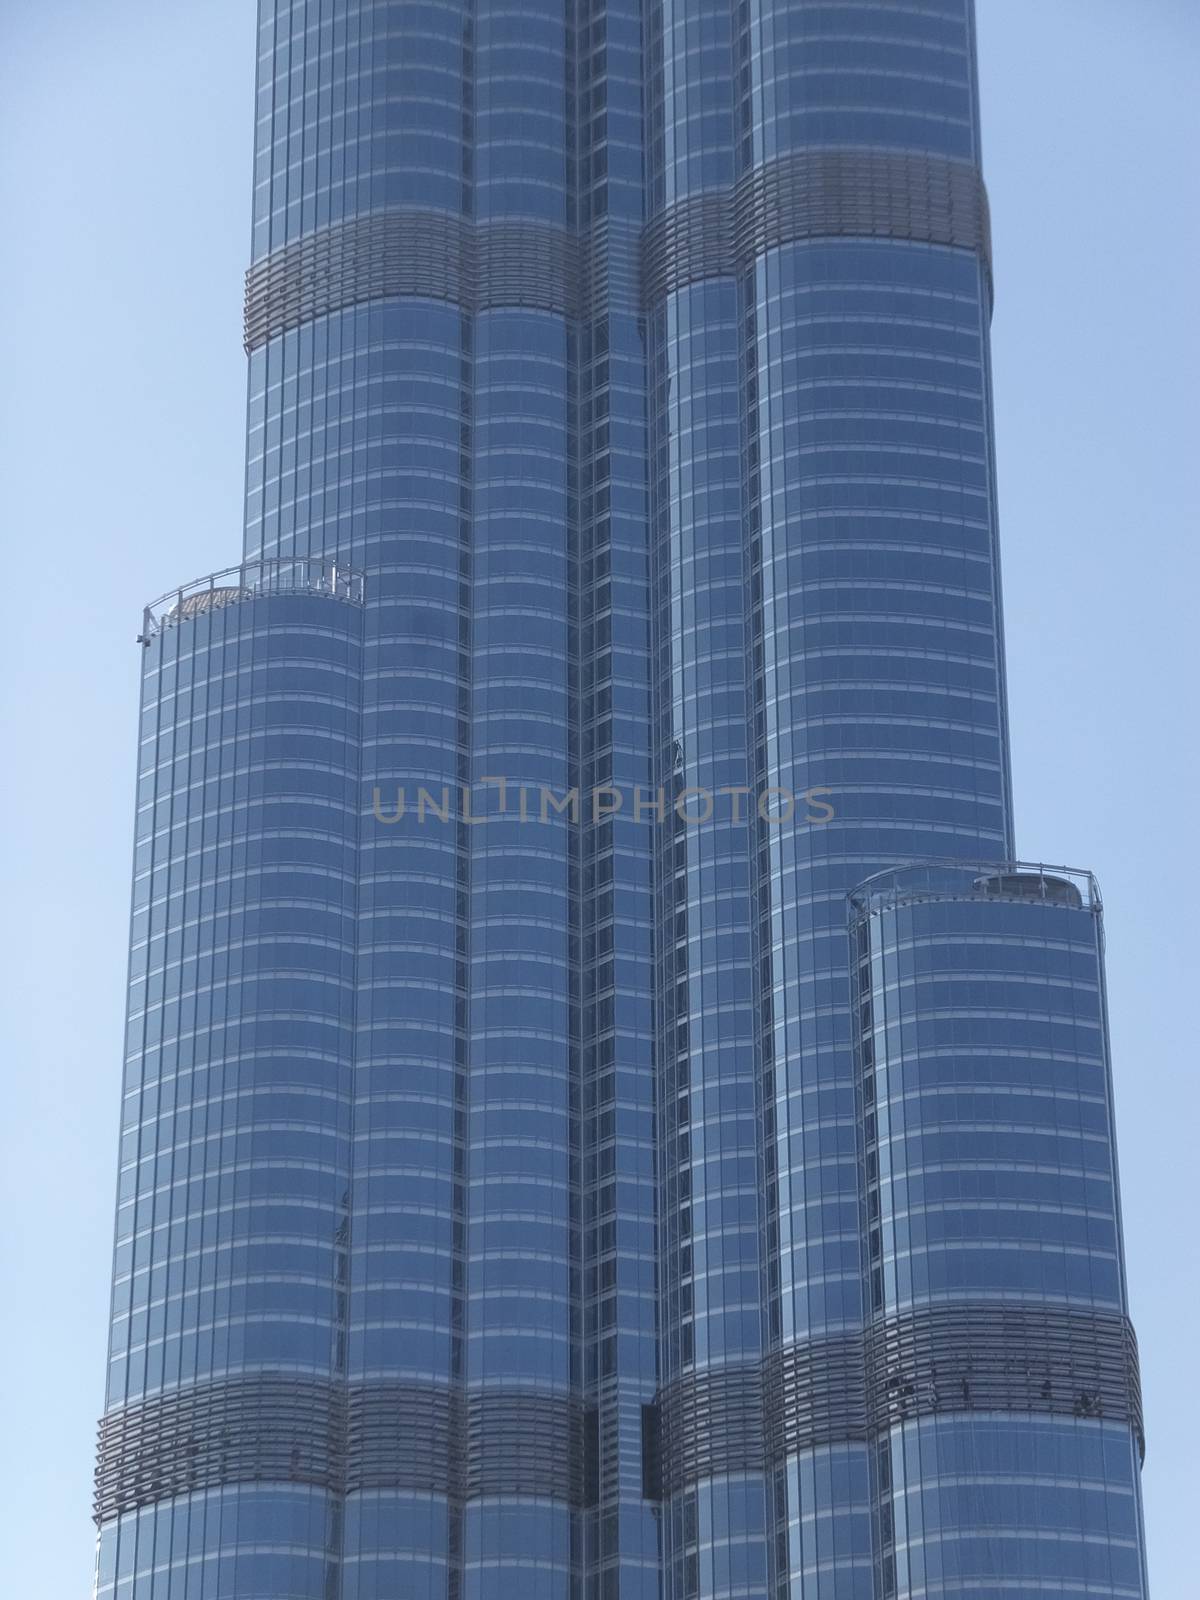 Burj Khalifa in Dubai, UAE by sainaniritu